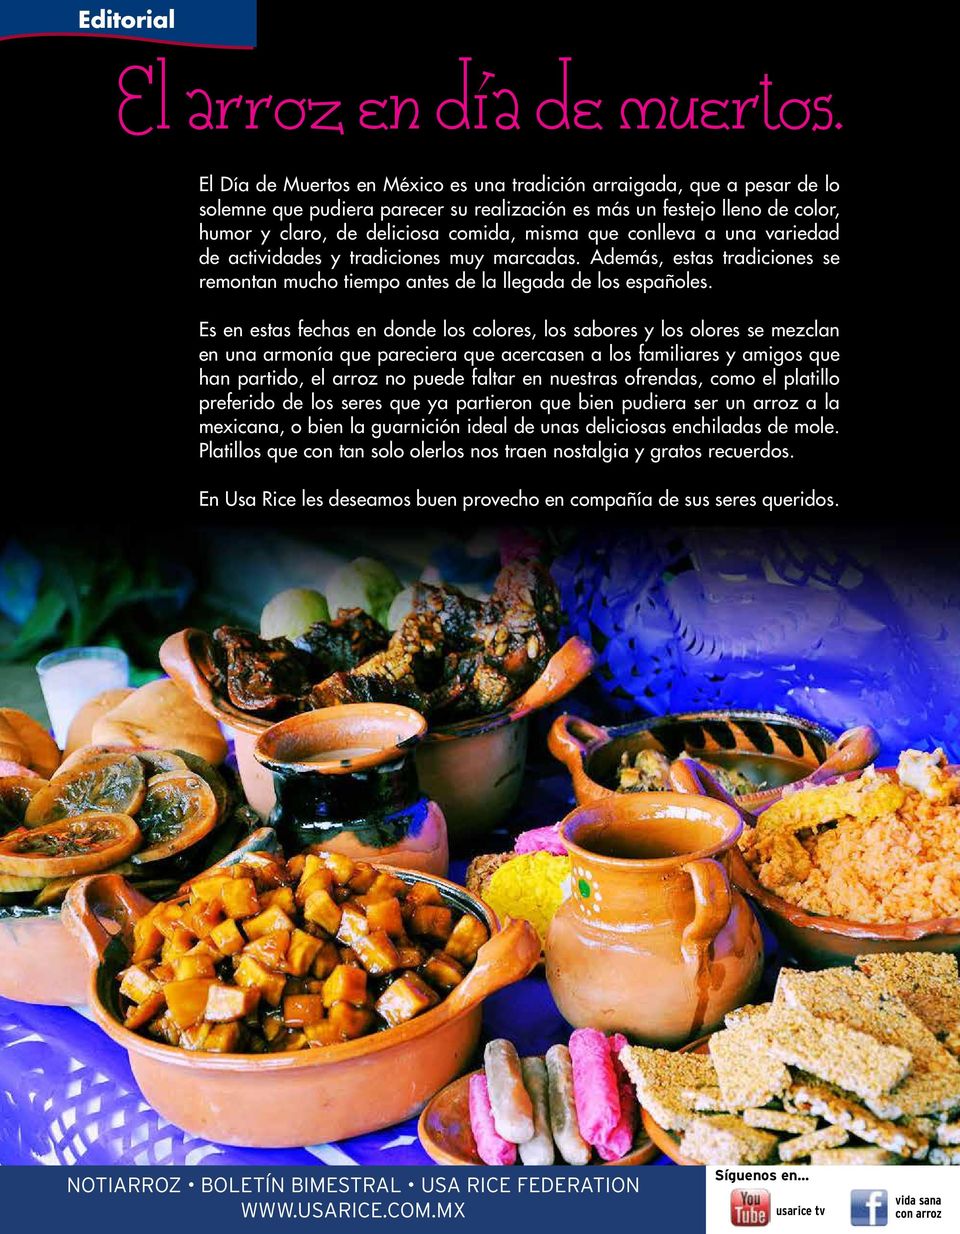 conlleva a una variedad de actividades y tradiciones muy marcadas. Además, estas tradiciones se remontan mucho tiempo antes de la llegada de los españoles.